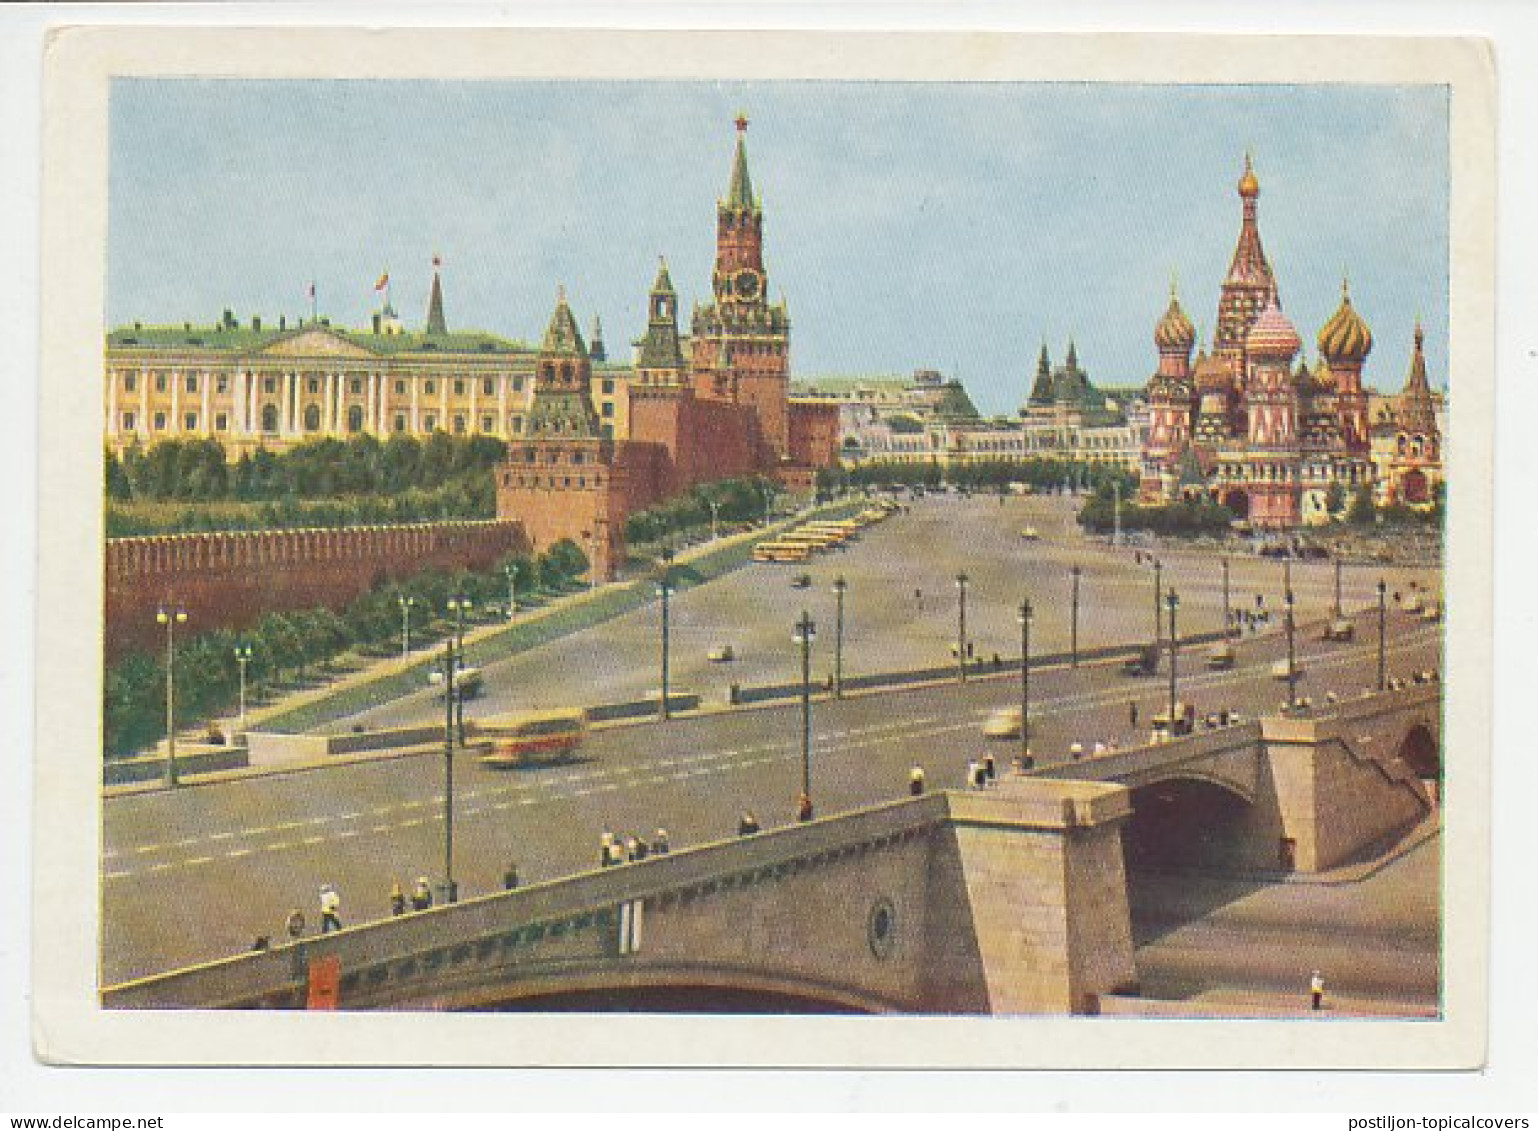 Postal Stationery Soviet Union 1957 Bridge - Kremlin Palace - Red Square - Ponti